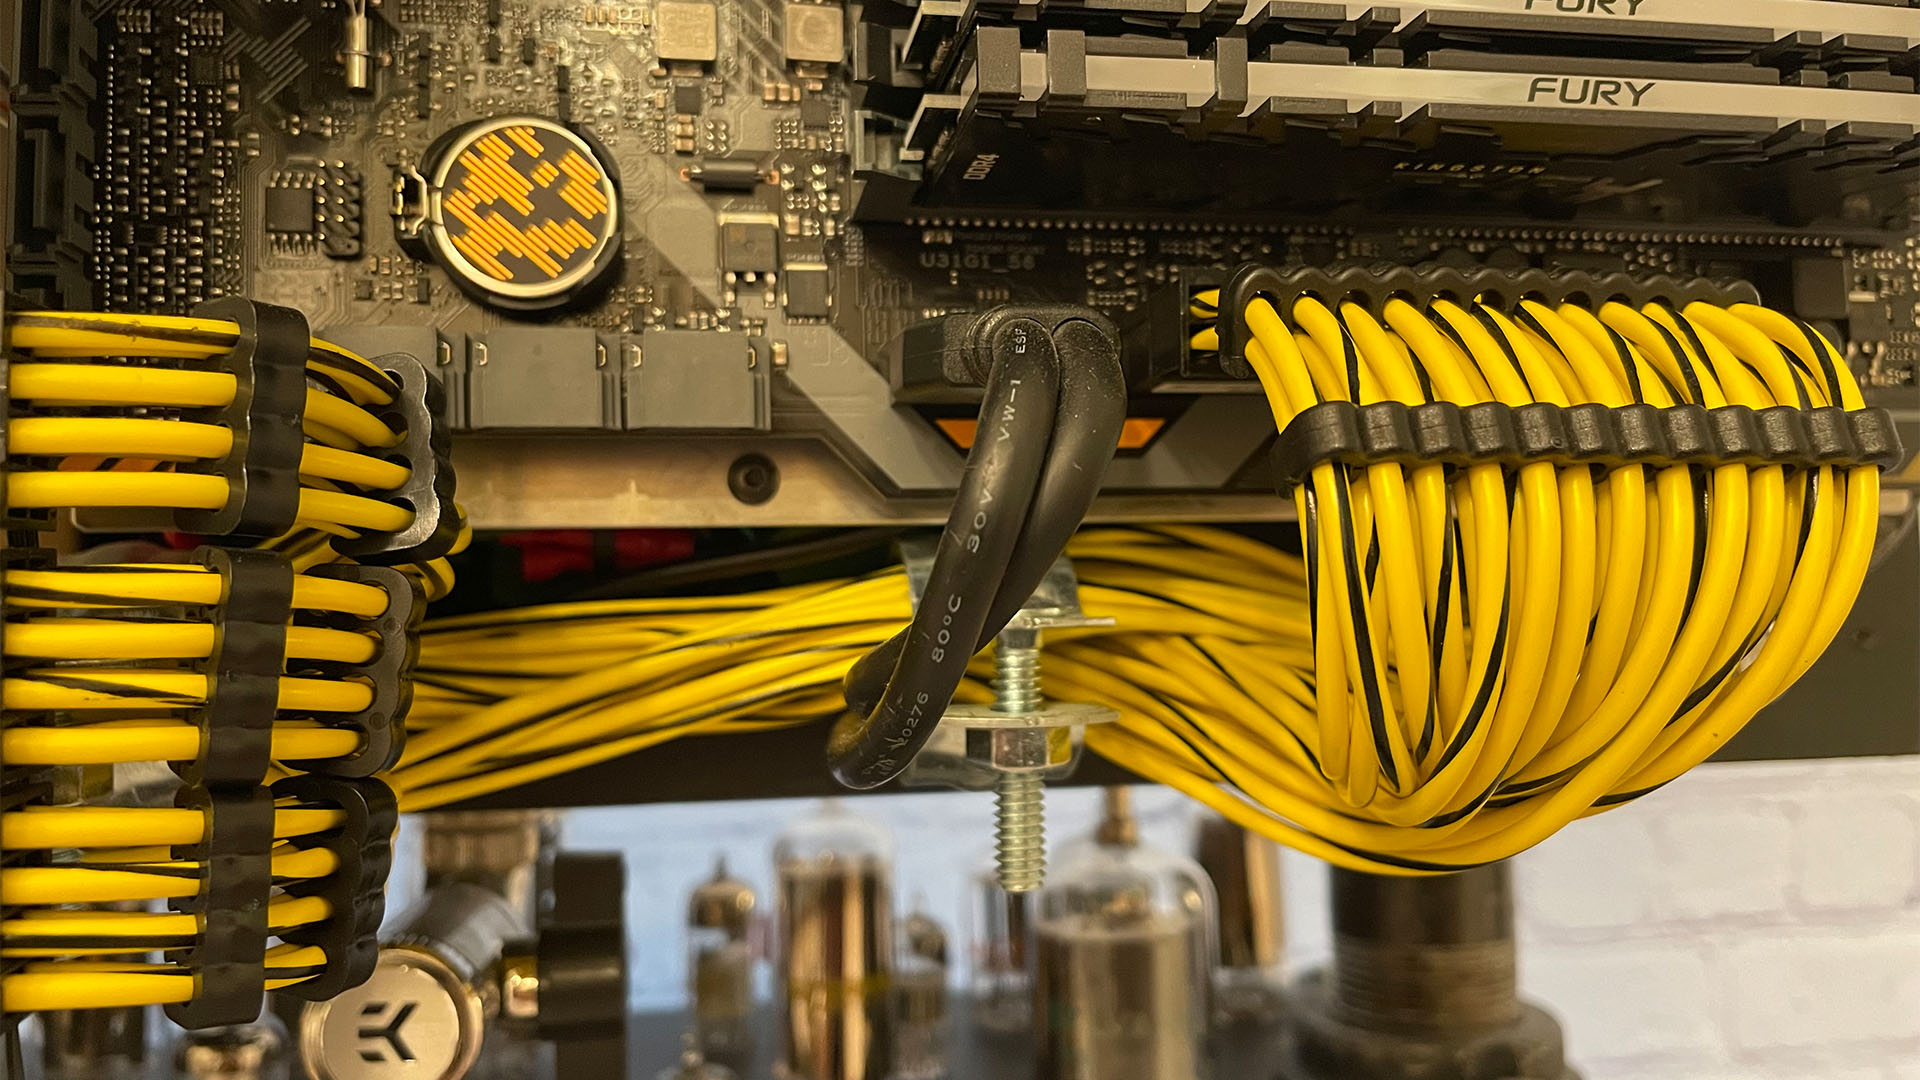 Los cables amarillos y negros hechos a medida en la PC para juegos steampunk